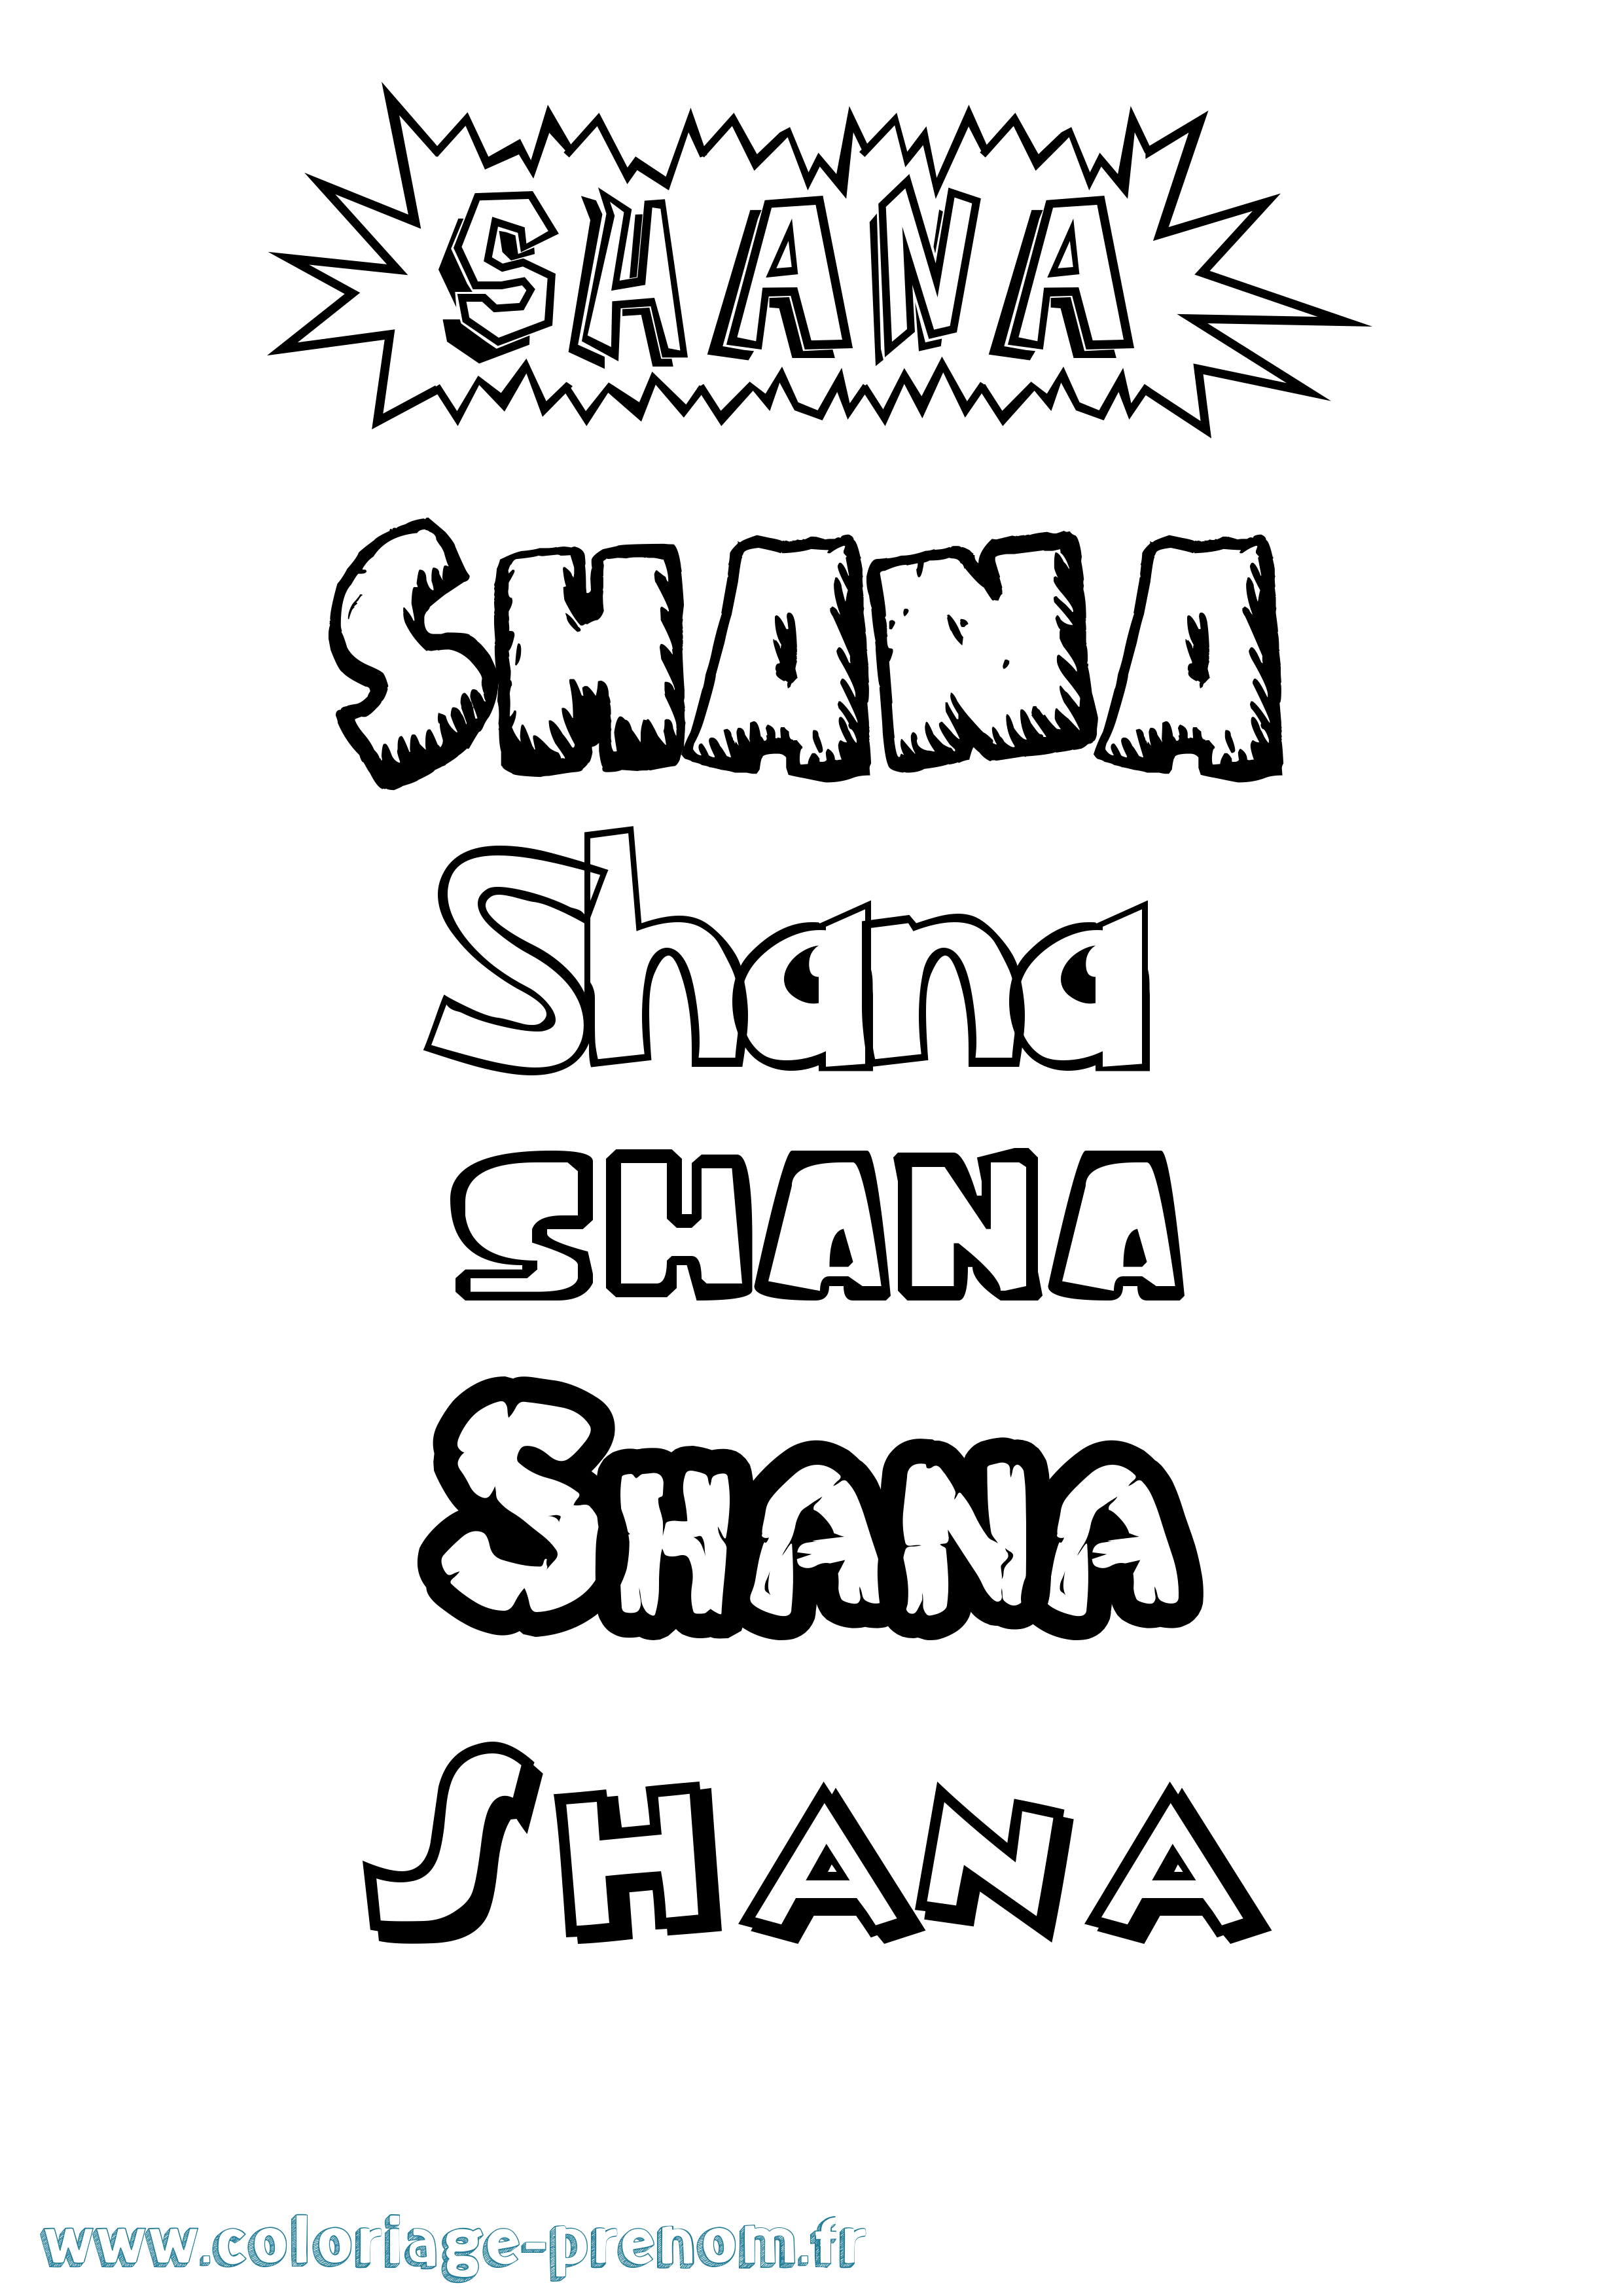 Coloriage prénom Shana